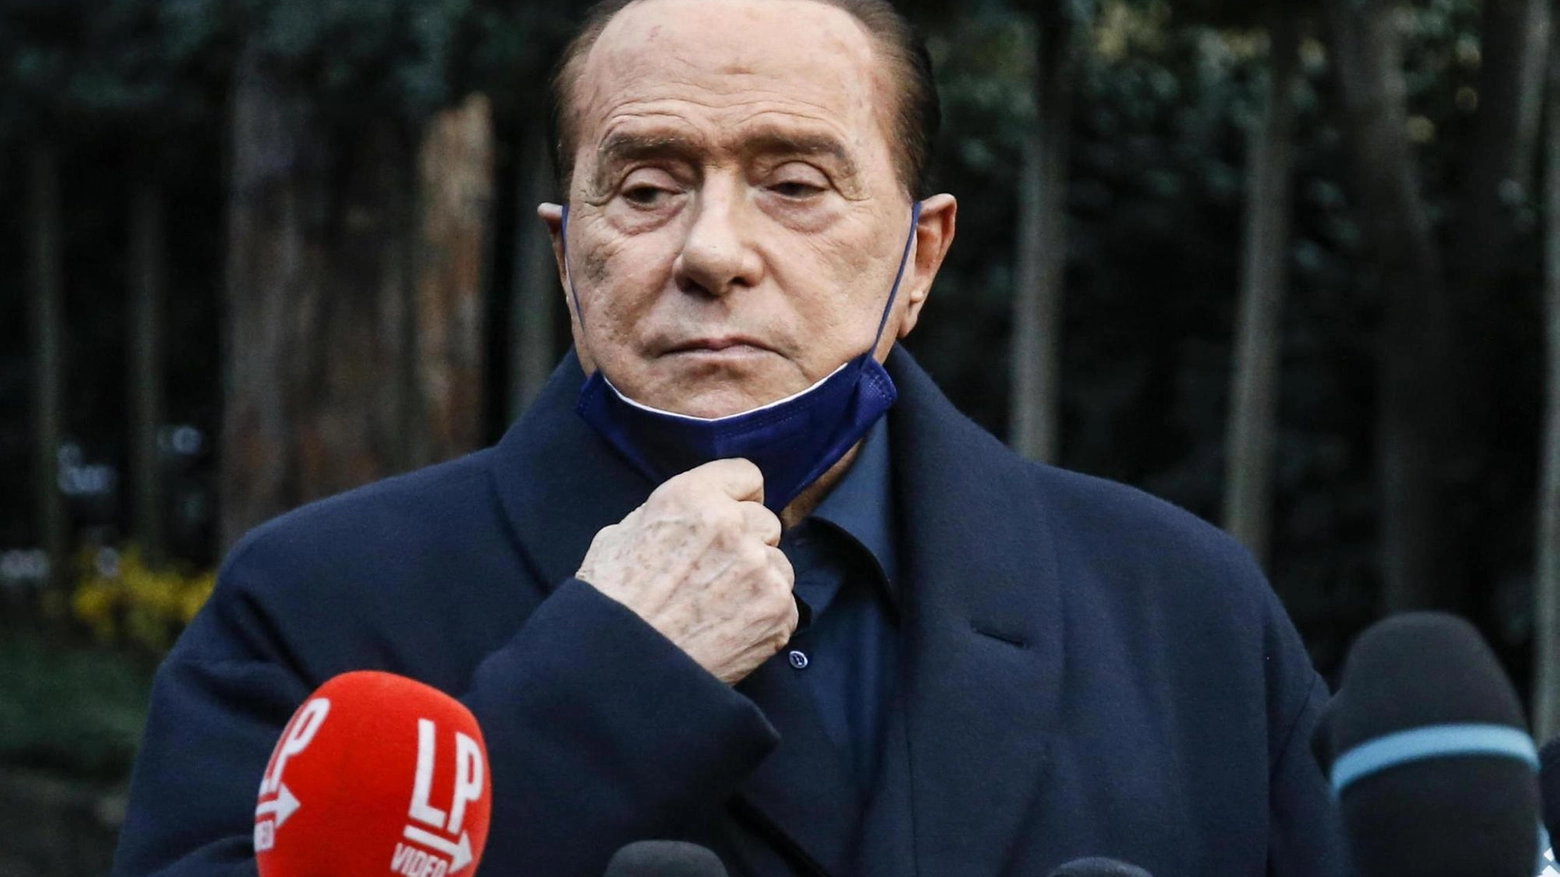 Il leader di Forza Italia Silvio Berlusconi, 85 anni